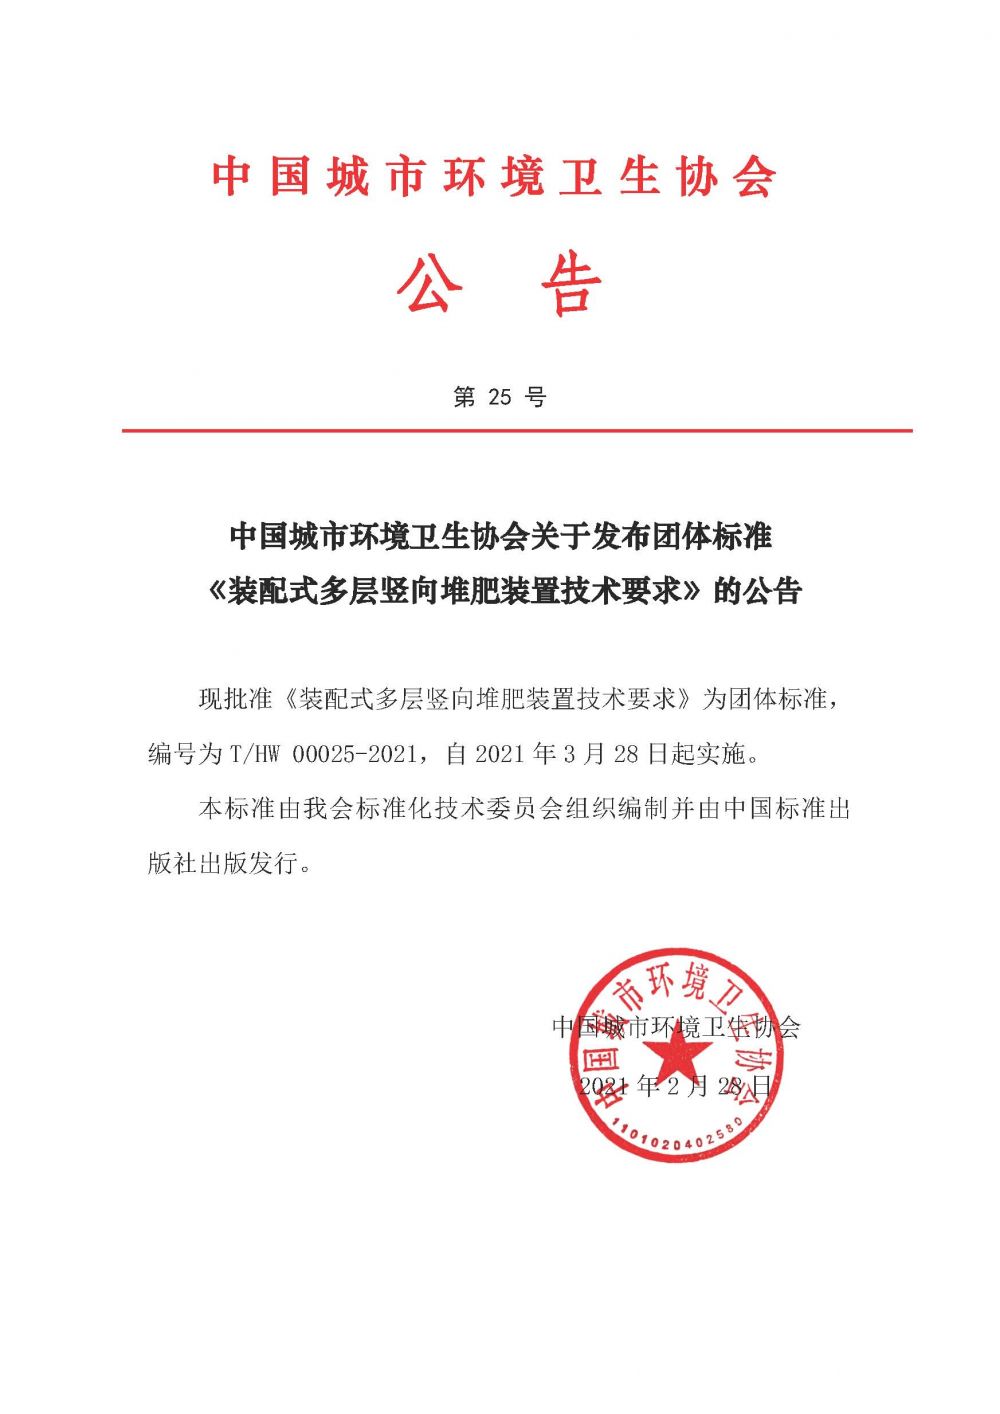 公告第25号中国城市环境卫生协会关于发布团体标准《装配式多层竖向堆肥装置技术要求》的公告.jpg